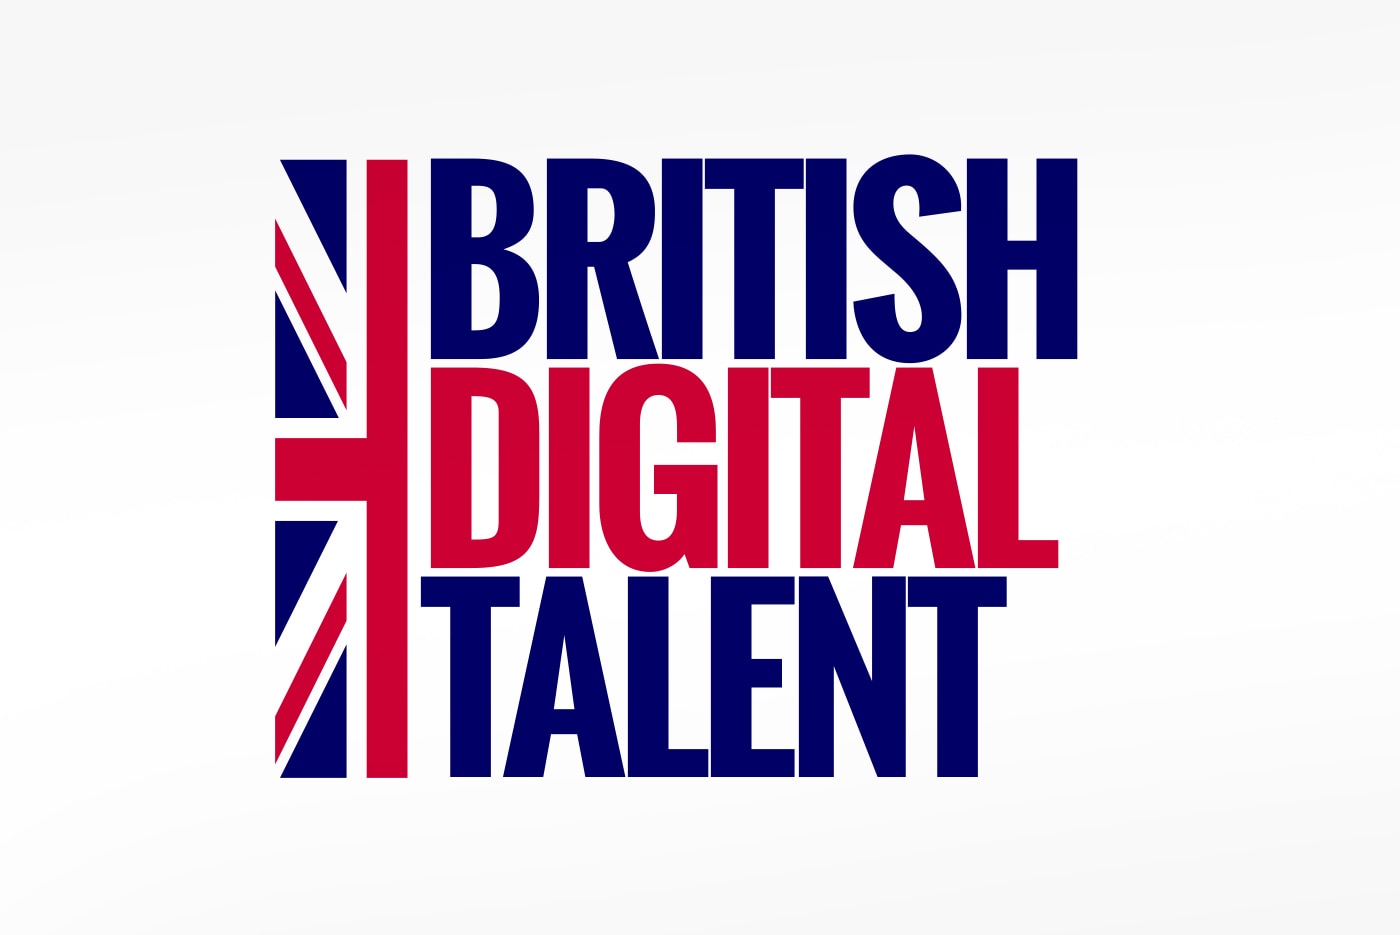 British Digital Talent